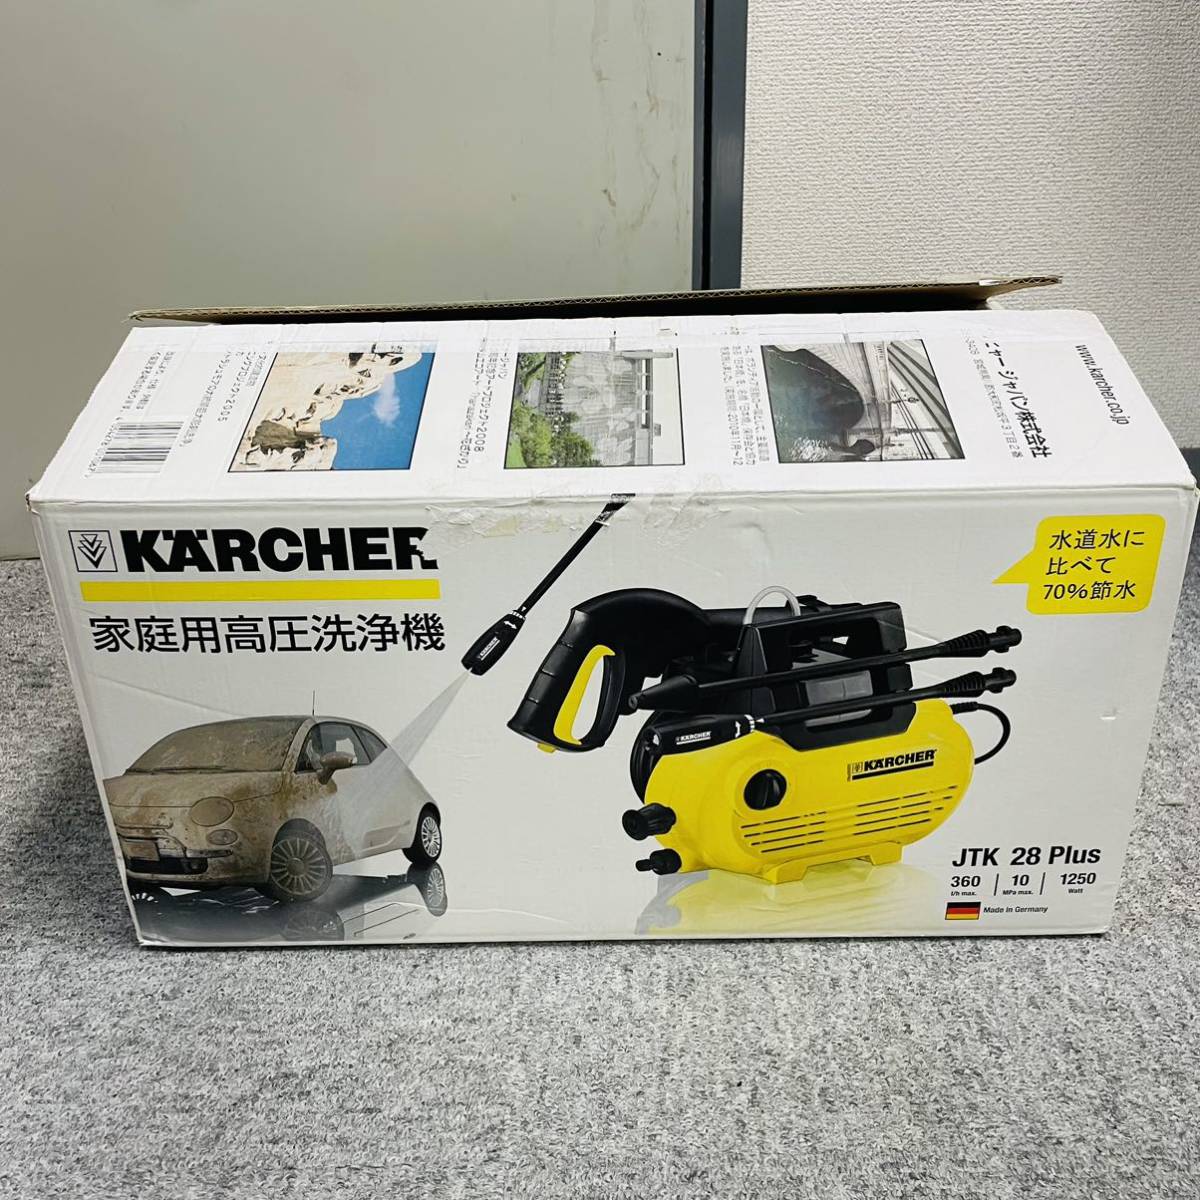 ケルヒャー 家庭用高圧洗浄機 JTK28 Plus KARCHER NN9856_画像1